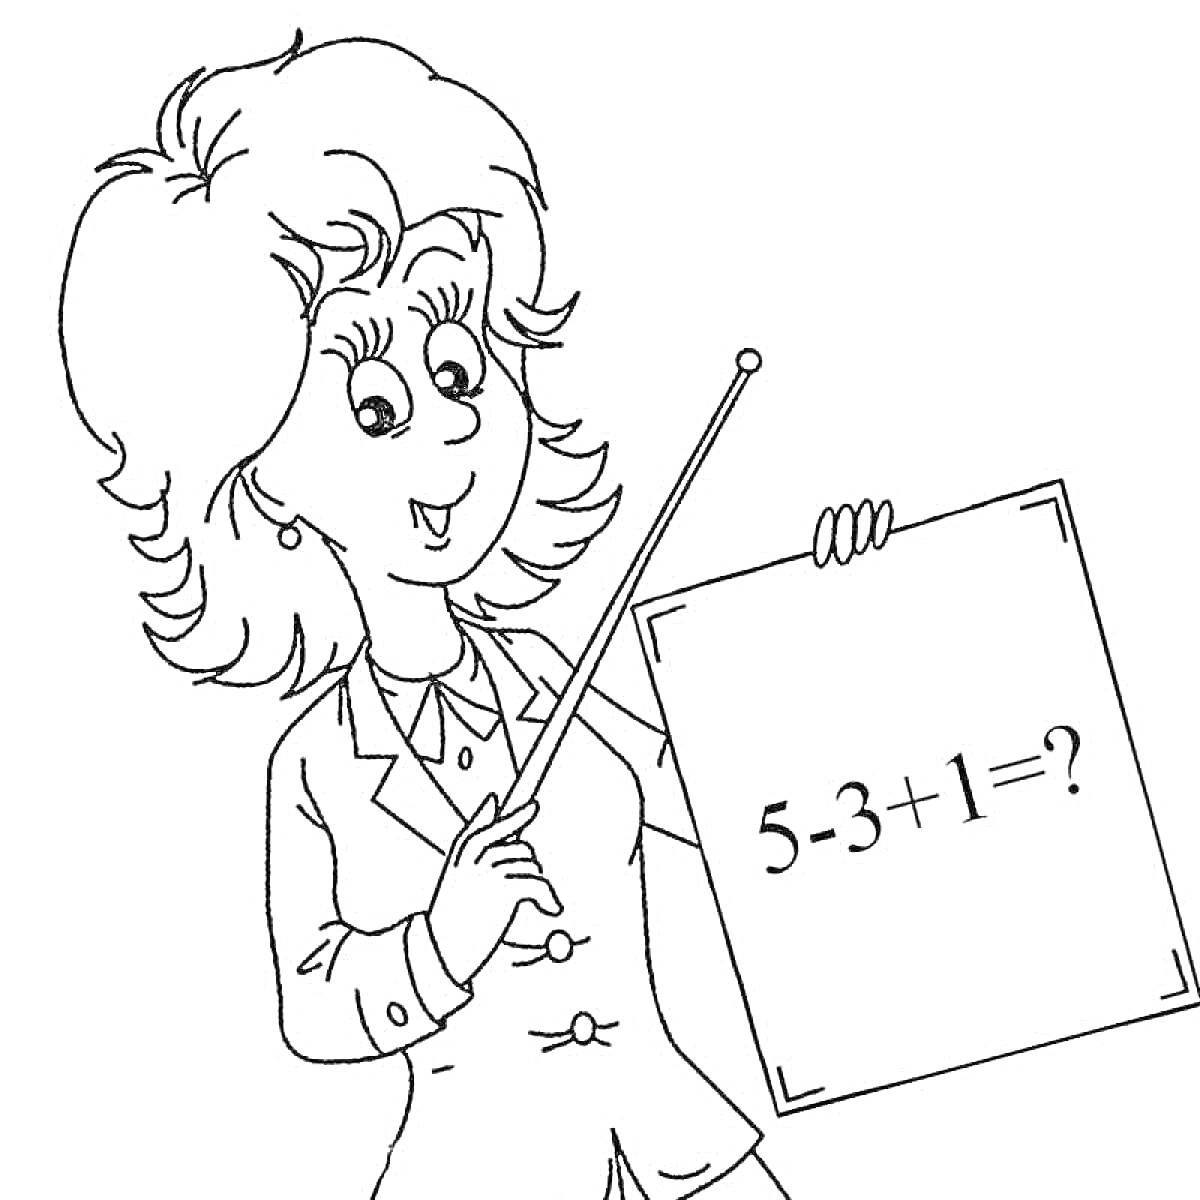 Раскраска Учительница с плакатом, на котором написано уравнение 5 - 3 + 1 = ?